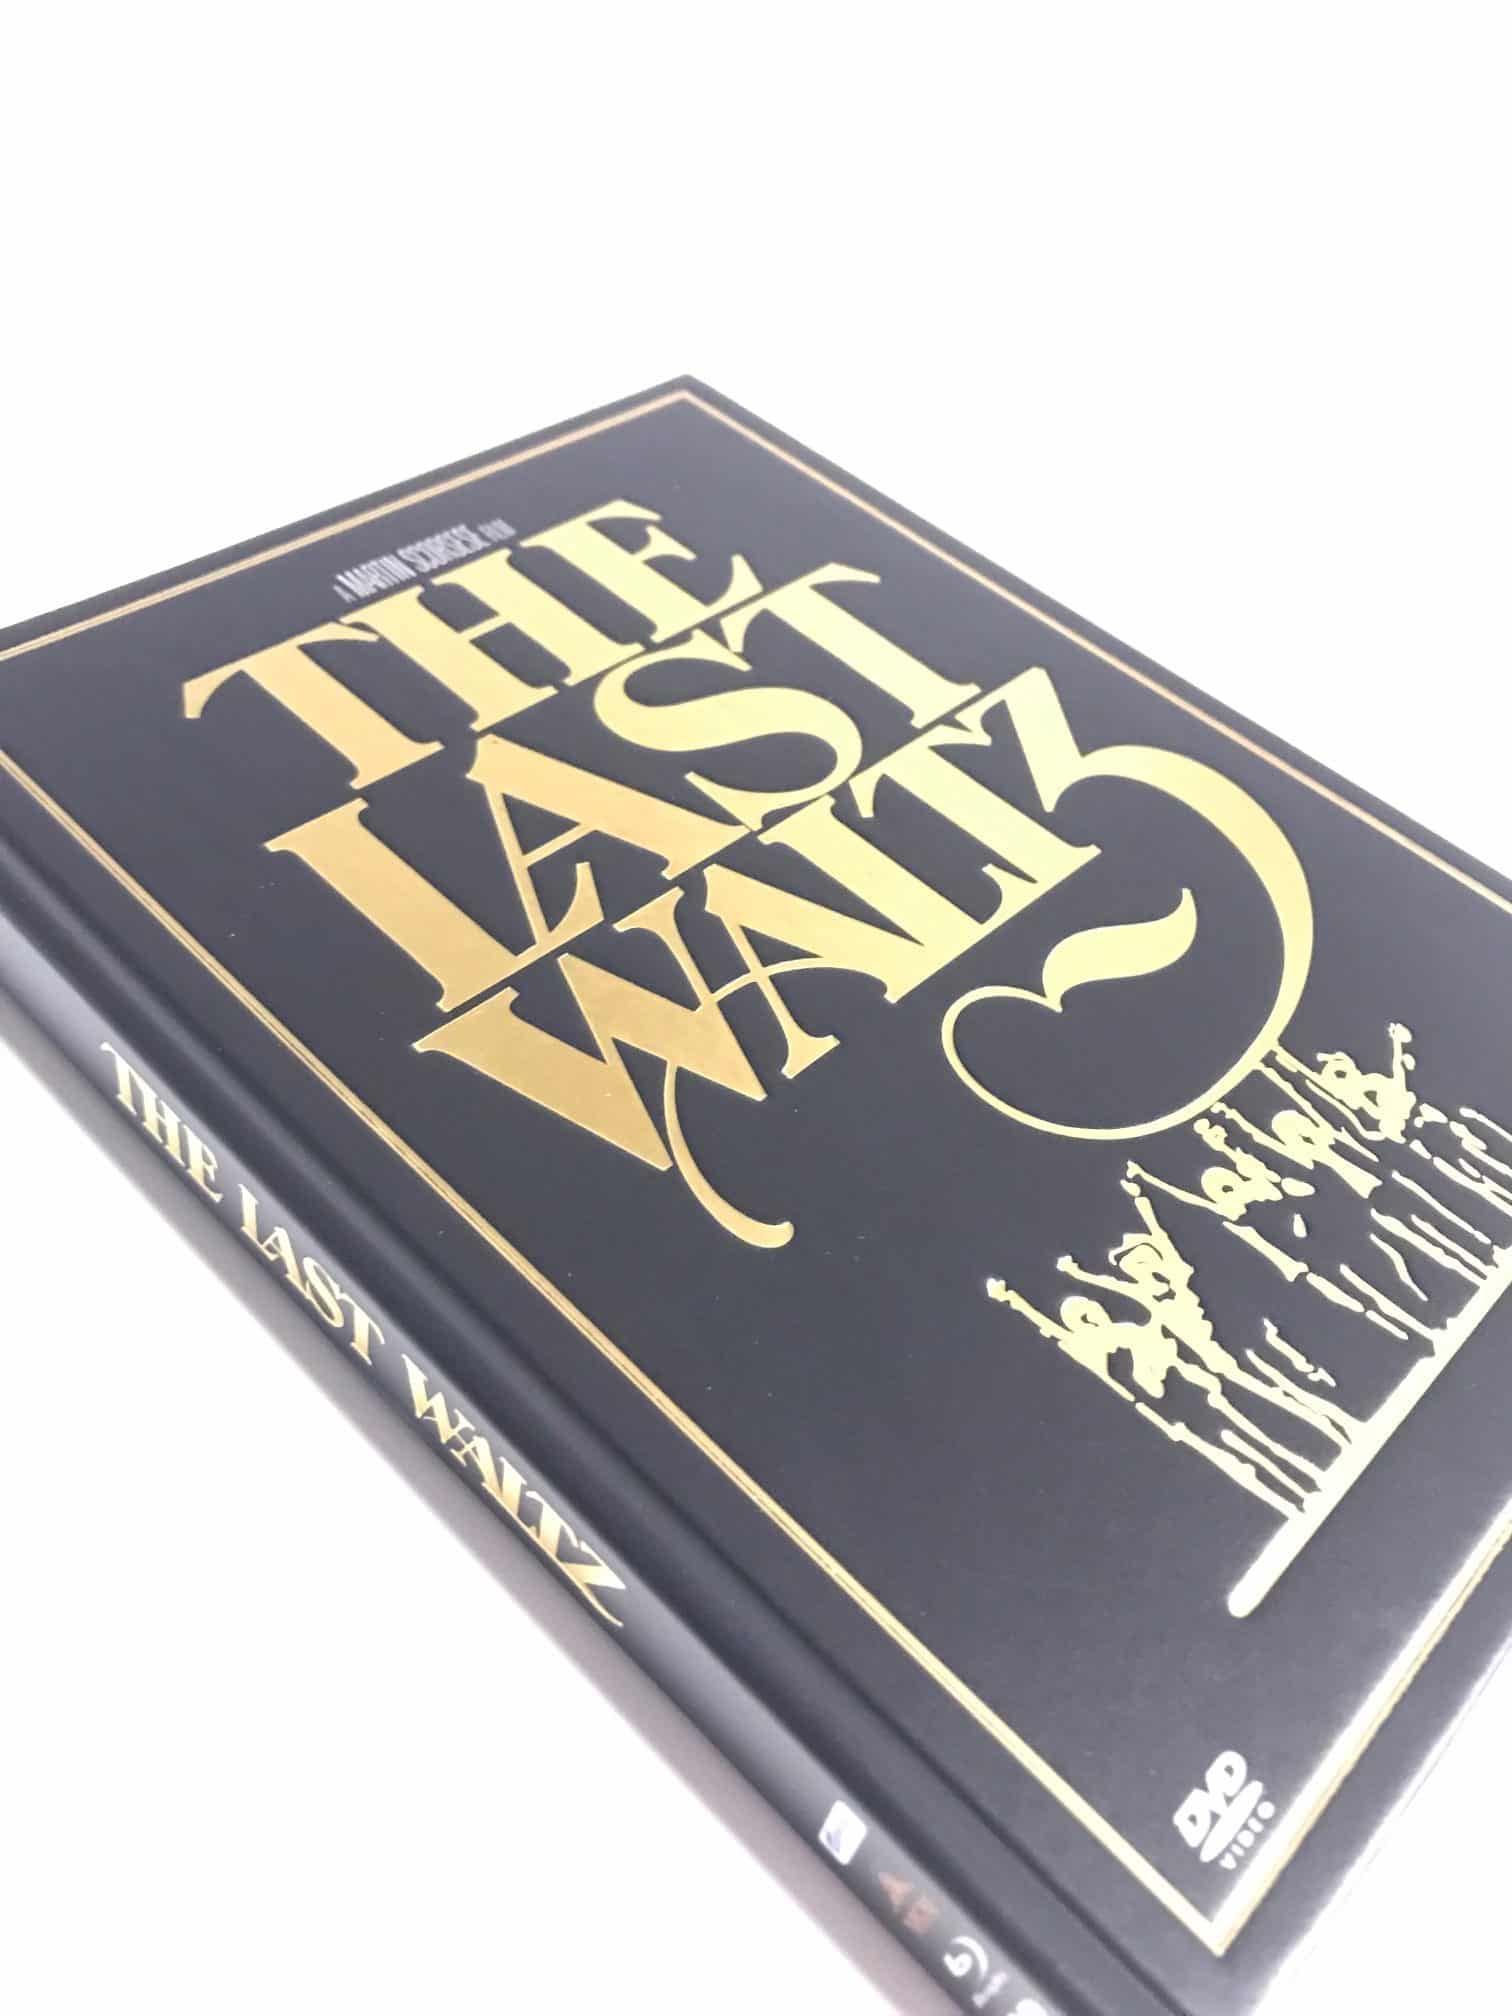 [Review] The Last Waltz (1978) von Martin Scorsese (im Blu-ray und DVD-Mediabook mit Heißfolienprägung)